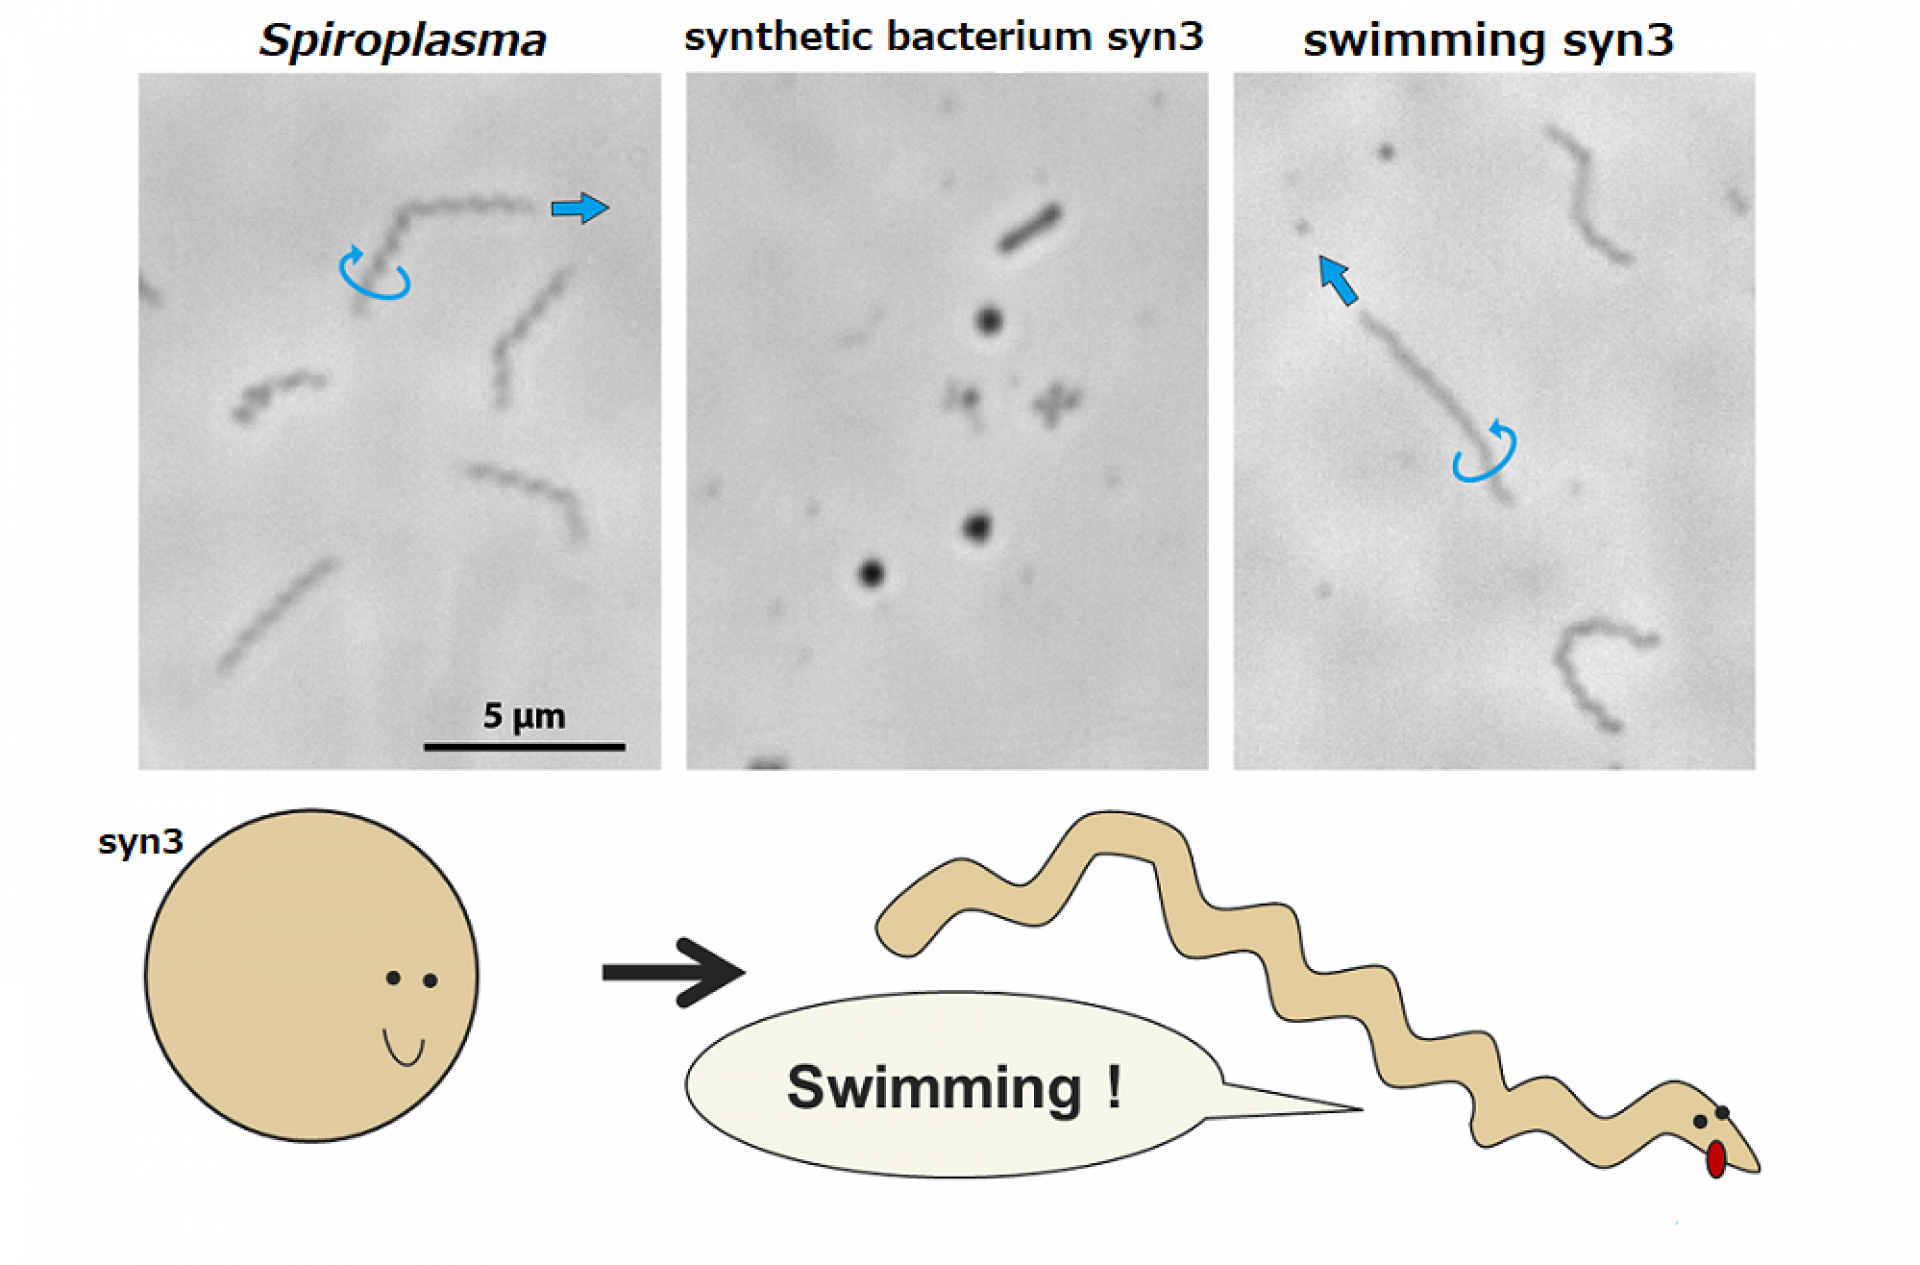 تصاویر میکروسکوپی از اسپیروپلاسمای طبیعی، باکتری مصنوعی syn3 و syn3 موبایل